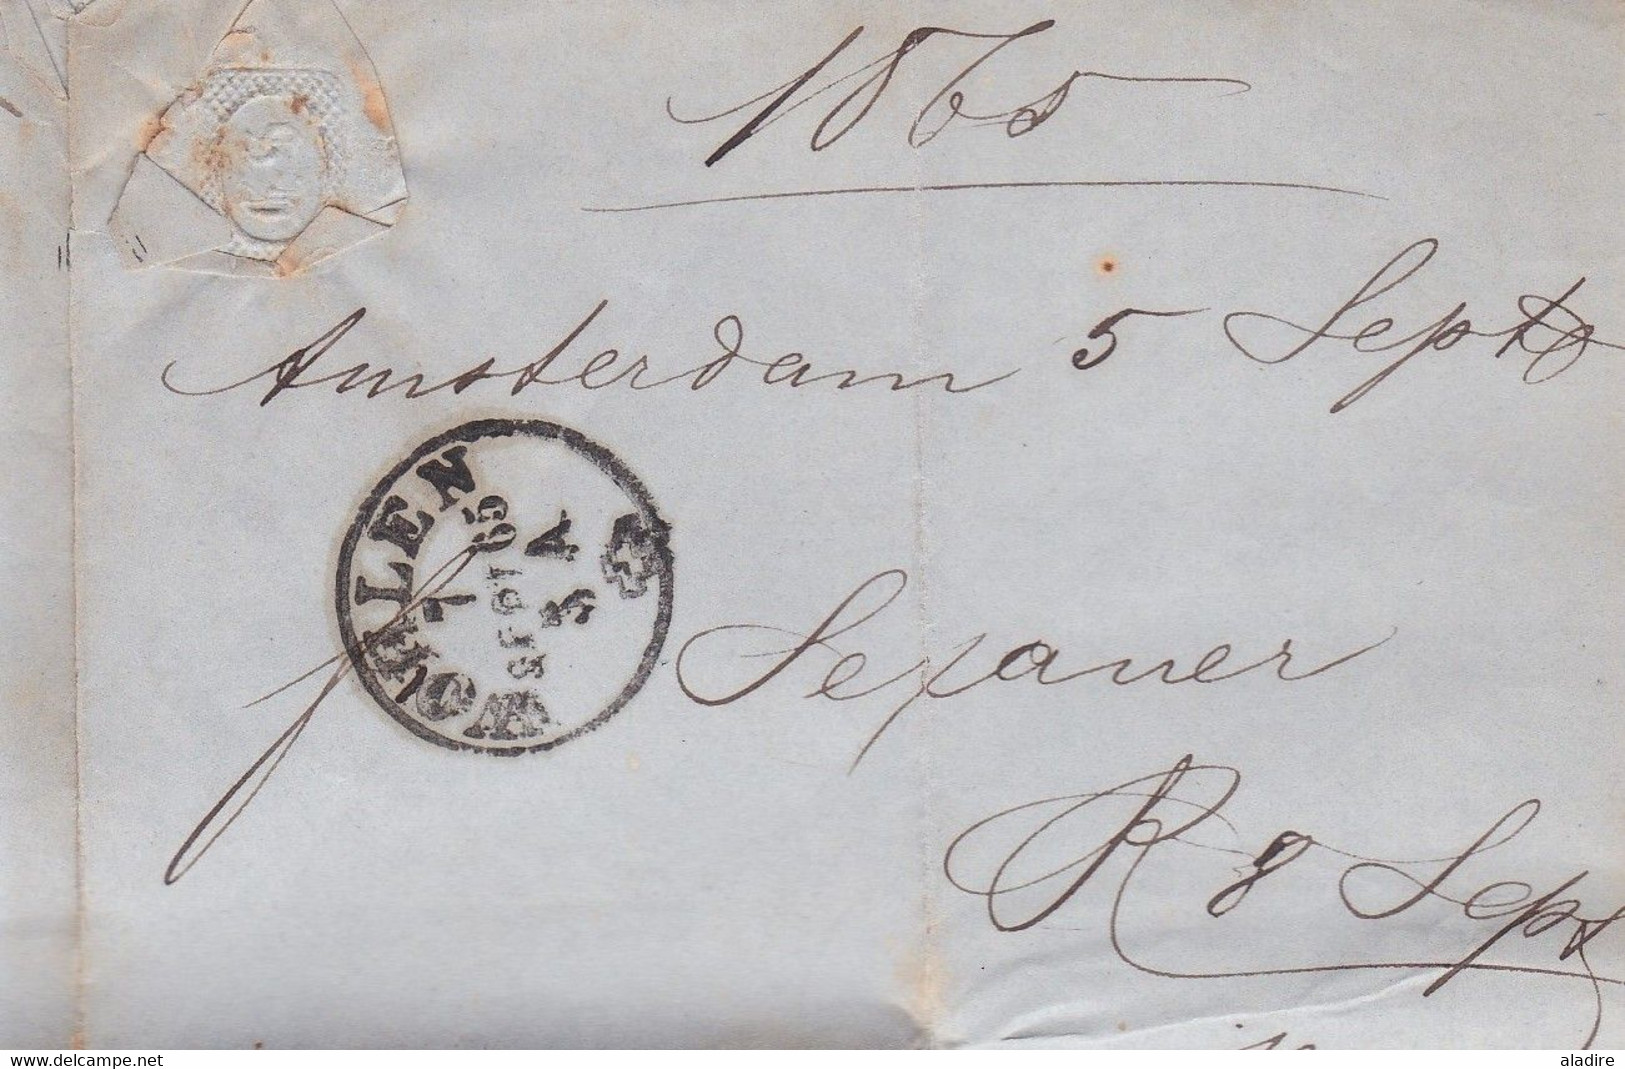 1865 - Lettre pliée avec correspondance d'Amsterdam, Pays Bas vers Wohlen, Suisse - Jacob Isler, paille